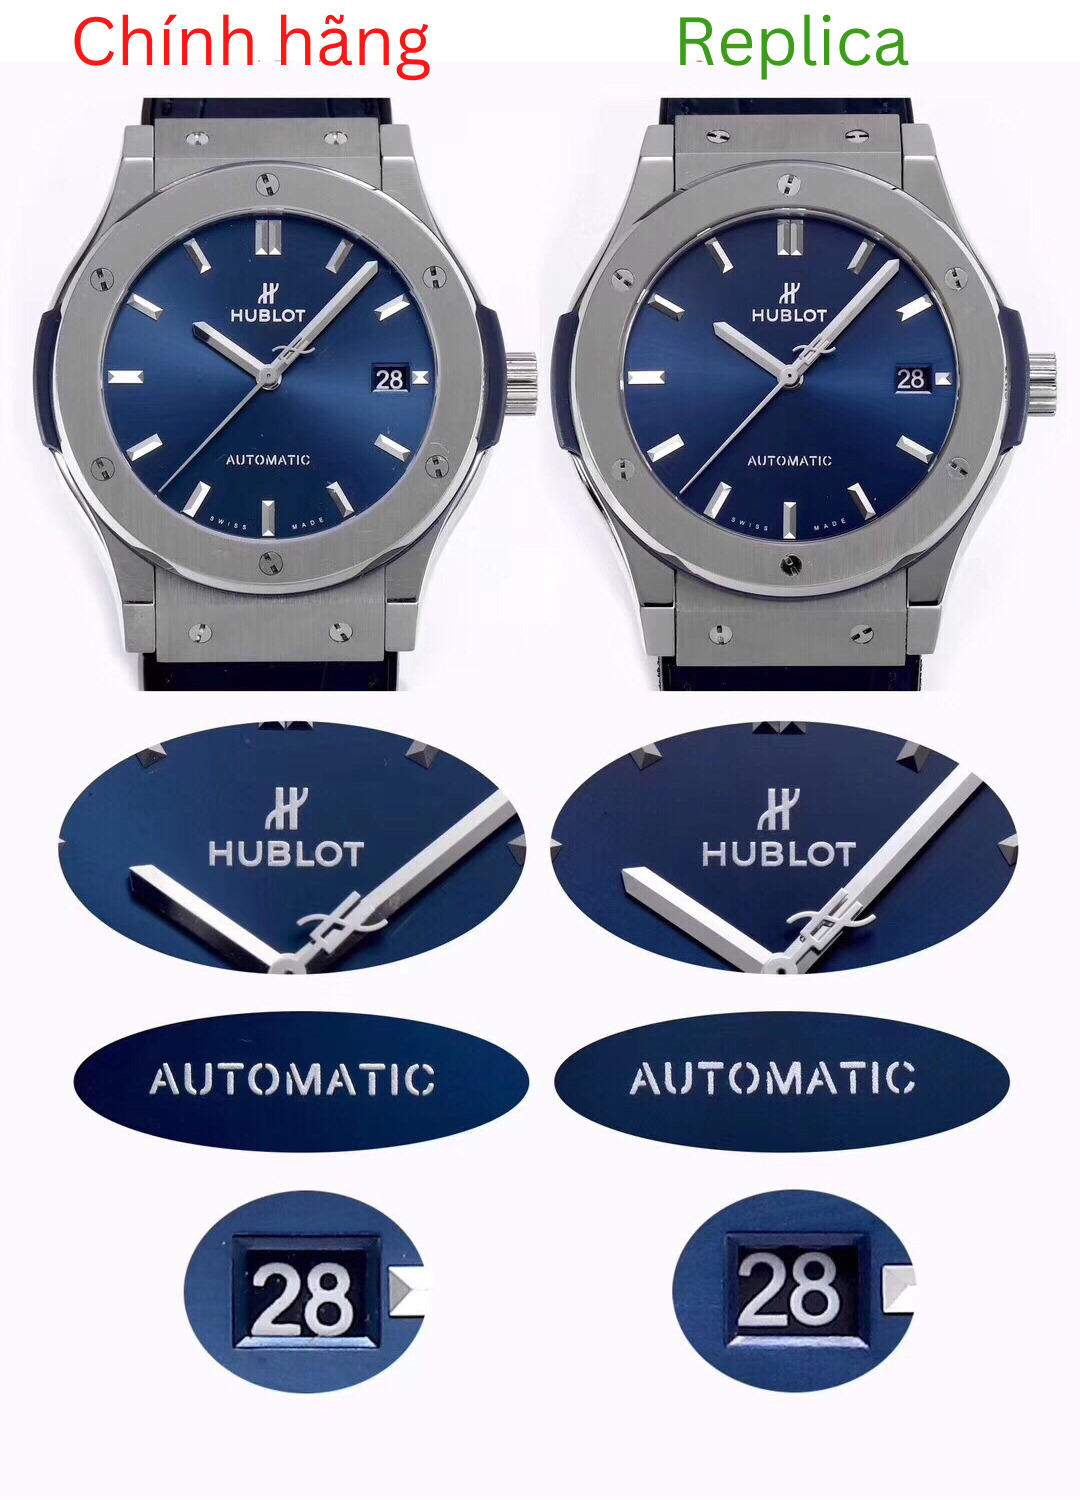 So sánh đồng hồ replica và đồng hồ chính hãng